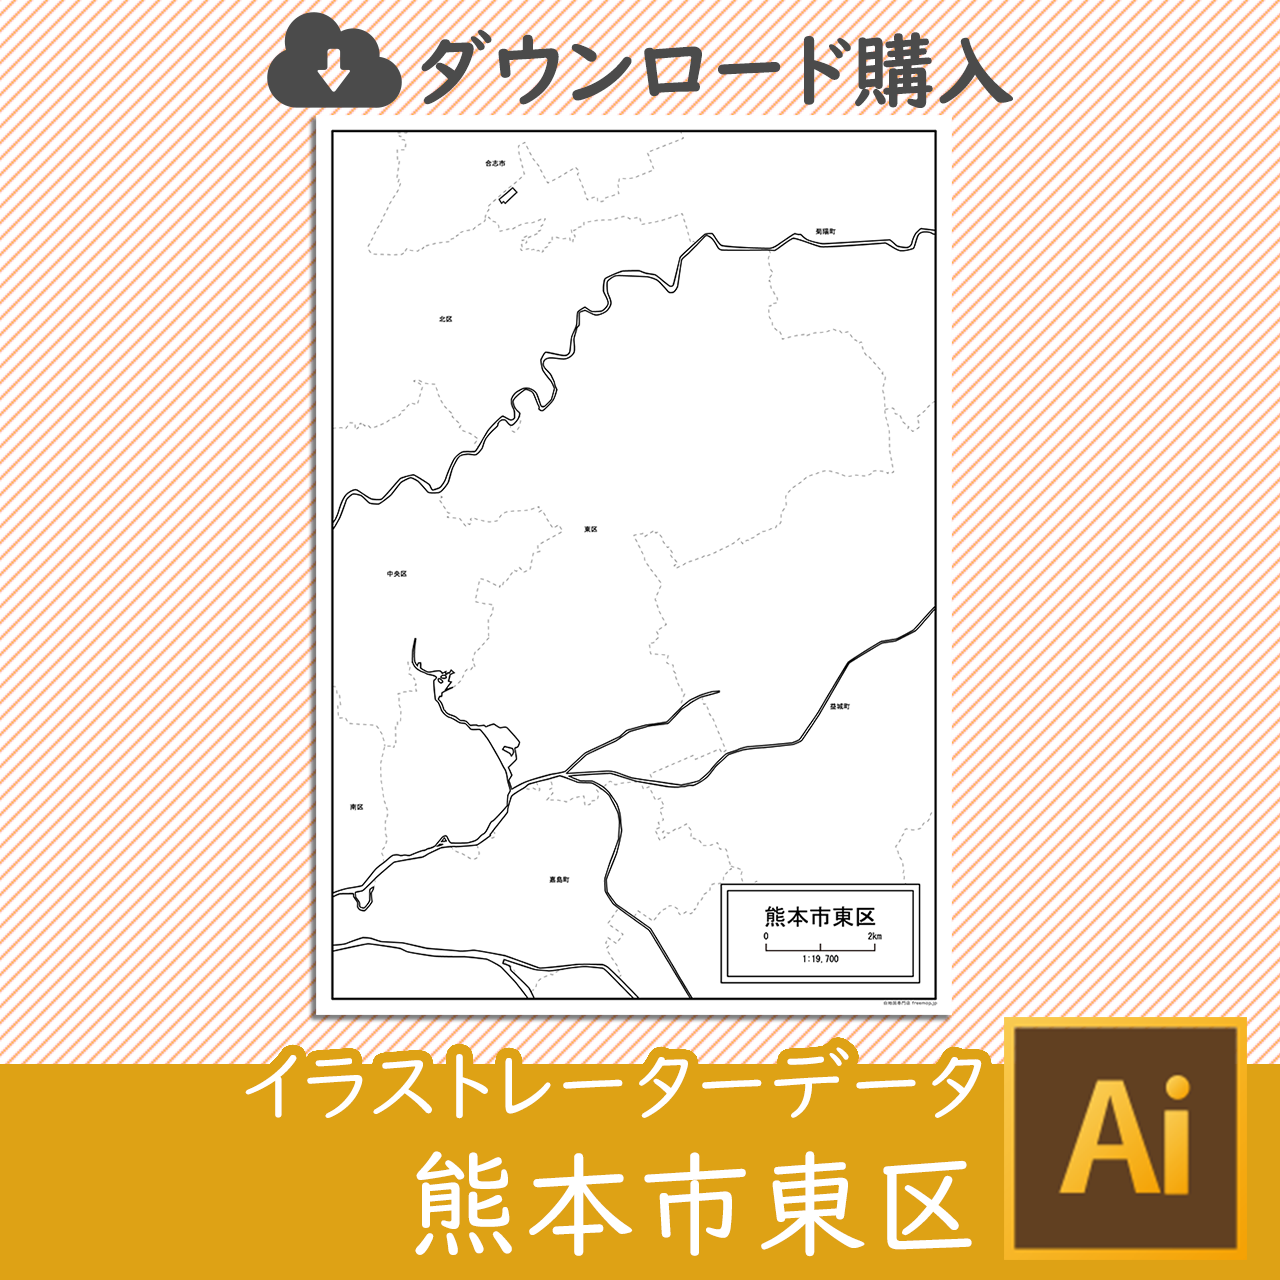 熊本市東区のaiデータのサムネイル画像